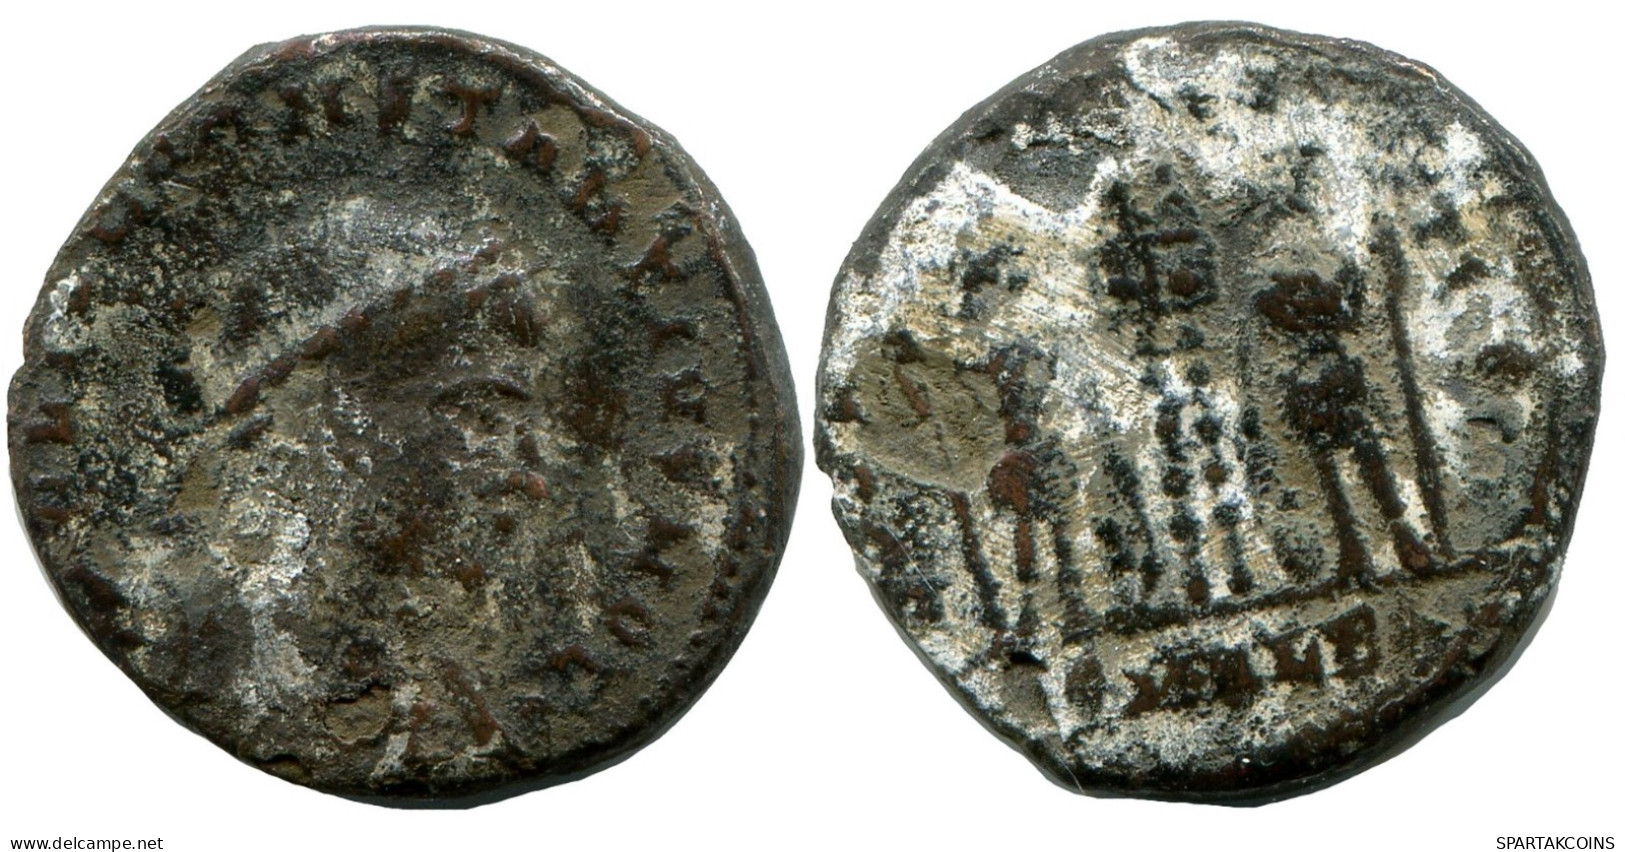 CONSTANTIUS II MINTED IN ALEKSANDRIA FOUND IN IHNASYAH HOARD #ANC10446.14.U.A - L'Empire Chrétien (307 à 363)